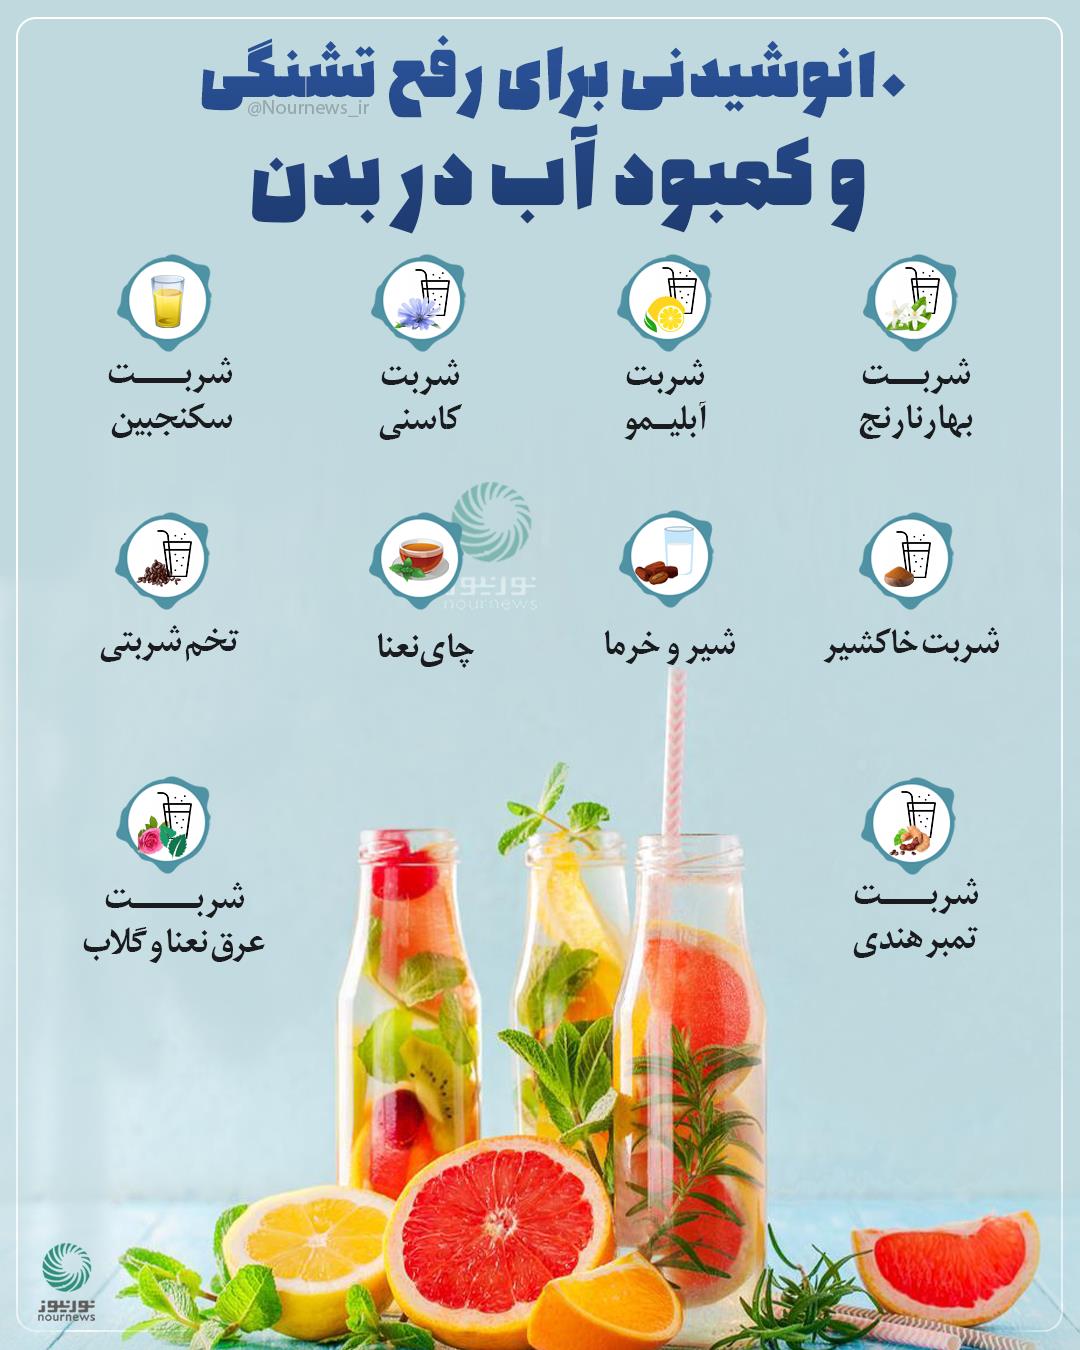 ده نوشیدنی برای رفع تشنگی و کمبود آب بدن